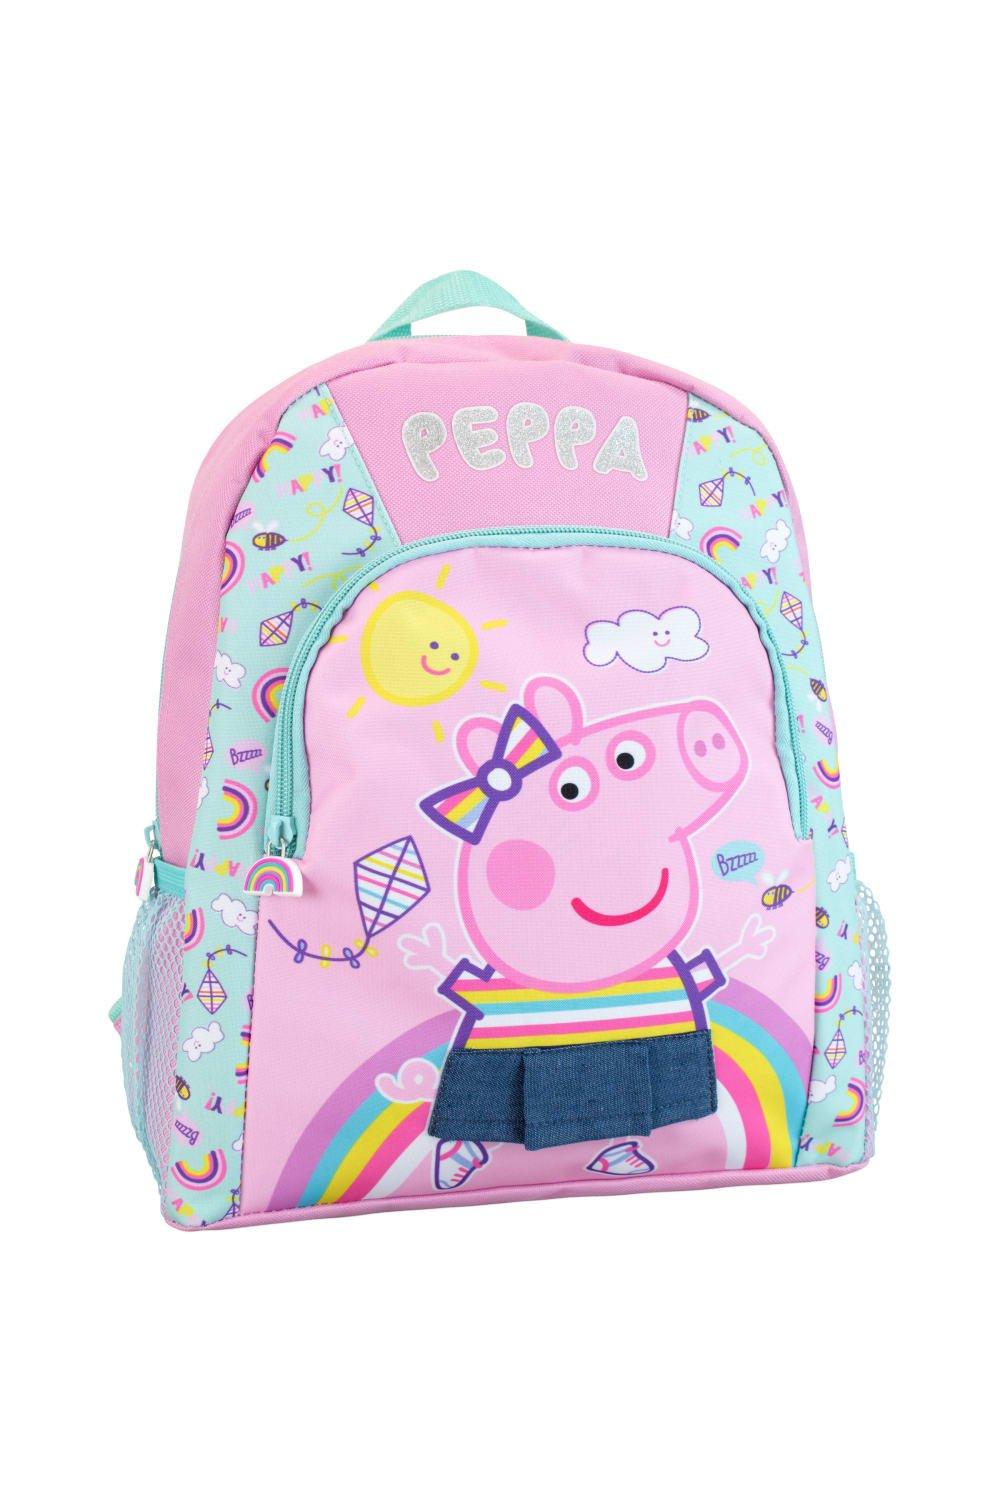 сумка свинка пеппа добрые поступки Детский рюкзак Peppa Pig, розовый